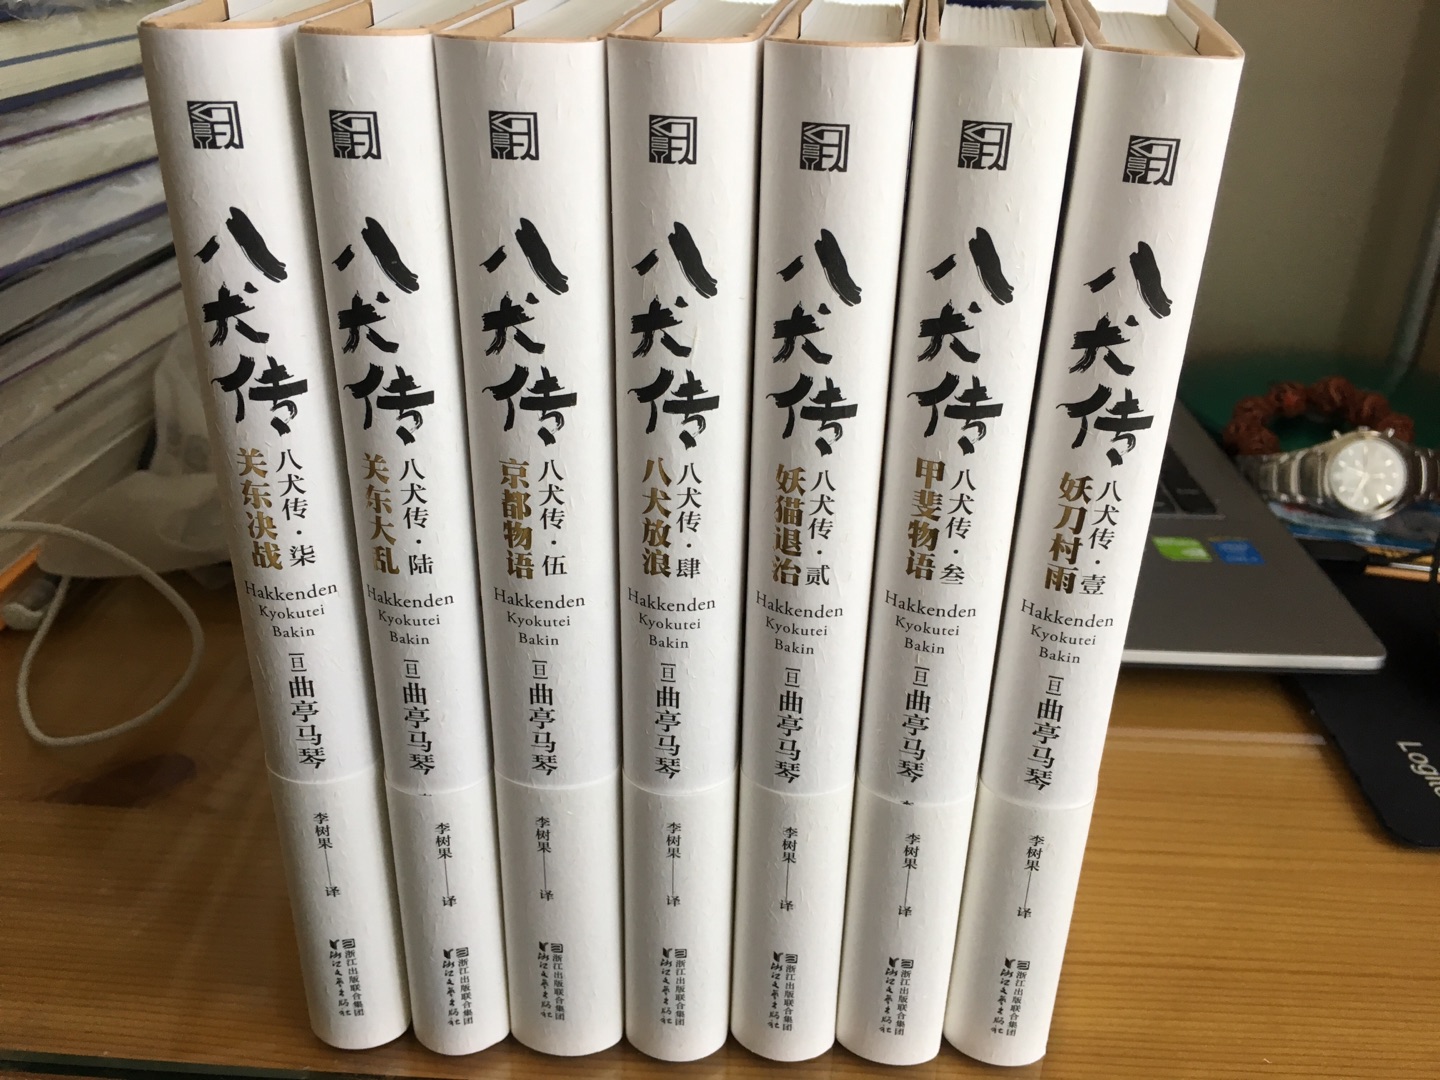 浙江文艺出版社再版李树果先生翻译的《南总里见八犬传》，是一件了不起的事。本书是日本江户文学的代表作之一，原作者曲亭马琴，原著长达九辑、五十三卷、一百八十一回（实际回数达一百九十余回），所以翻译和出版的难度很大，中文全译本只有李树果先生这一译本，最初于1992年由南开大学出版社出版。如今浙江文艺出版社再版，中间已经隔了25年。但是出版商在广告中夸大其辞，却没有将再版编辑有何独到之处做个介绍。本书在豆瓣《南里总见八犬传》这个书名下的评分是7.6分，要比现在这个书名下9.6分的评分客观。《八犬传》是一部长篇侠义神怪小说，不是历史小说，更不是军事小说。